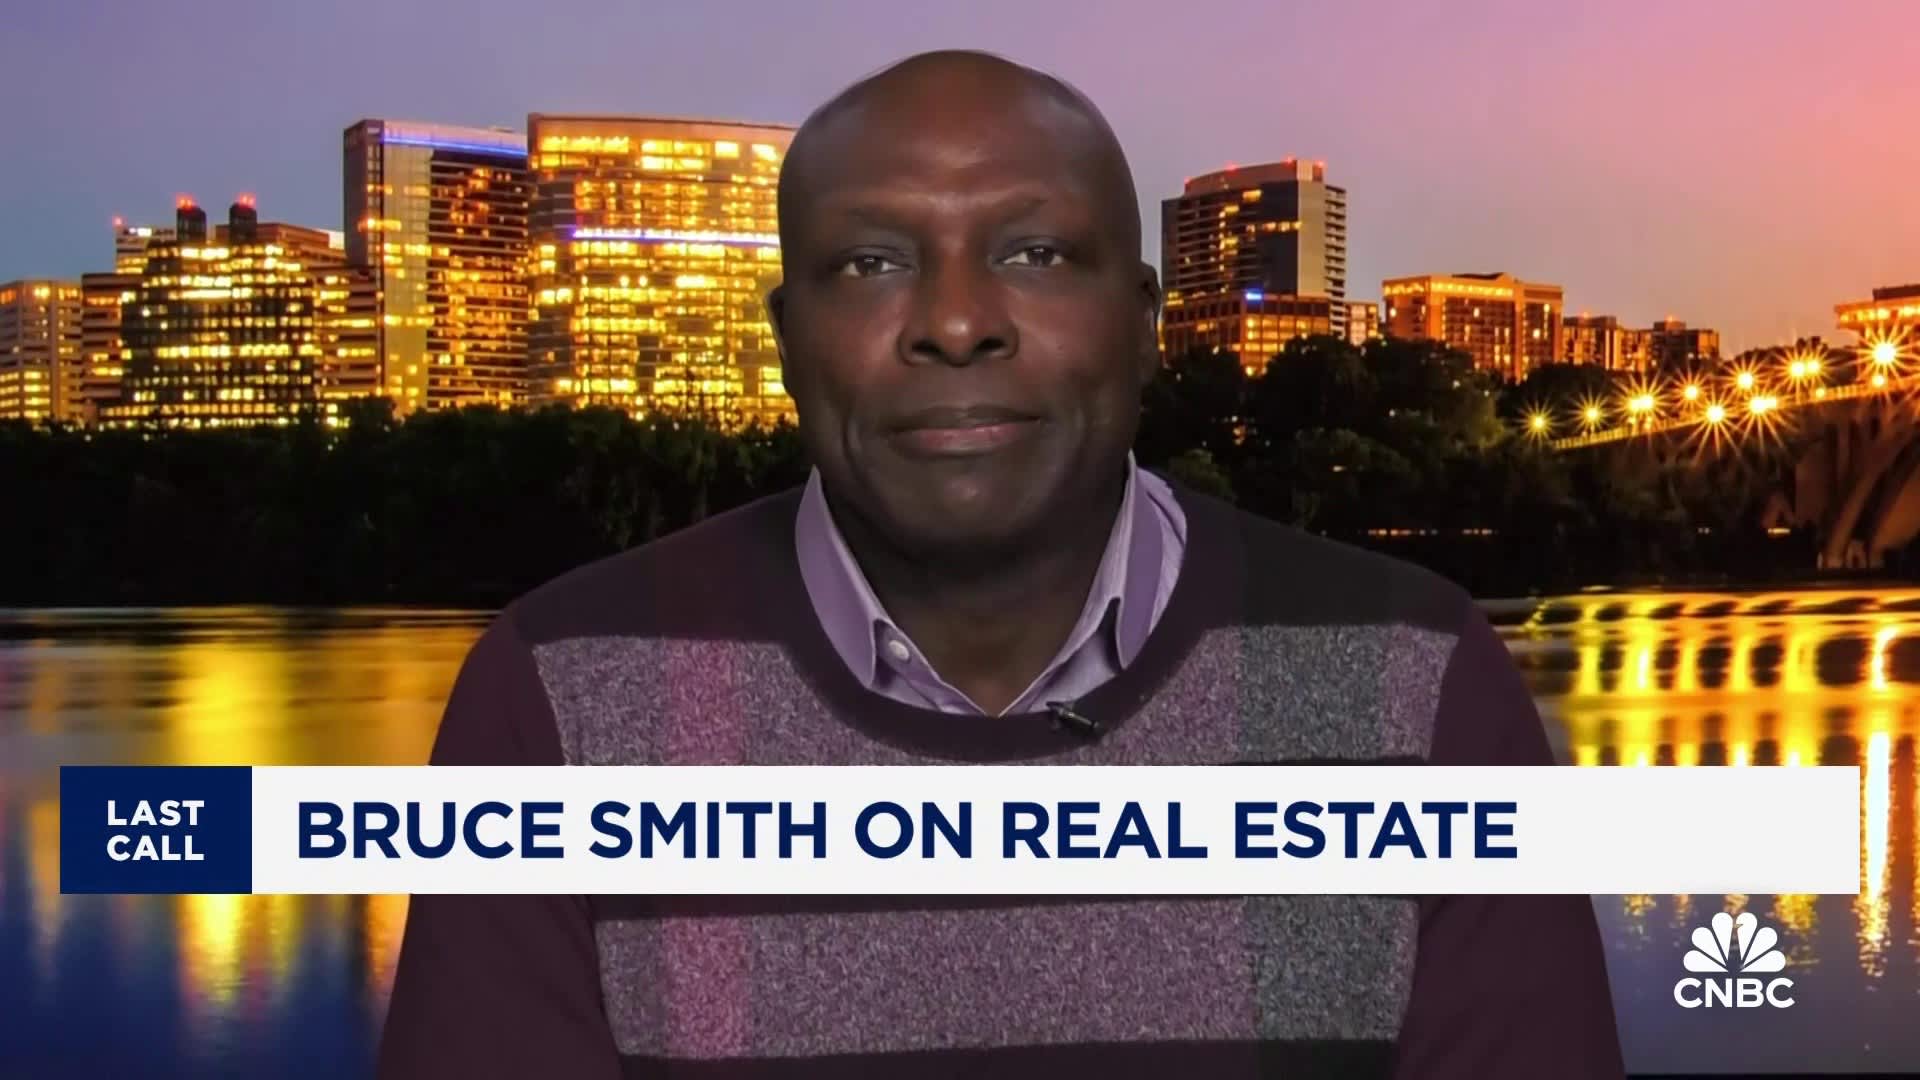 NFL Hall of Famer Bruce Smith snakker om eiendom og virkningen av renter